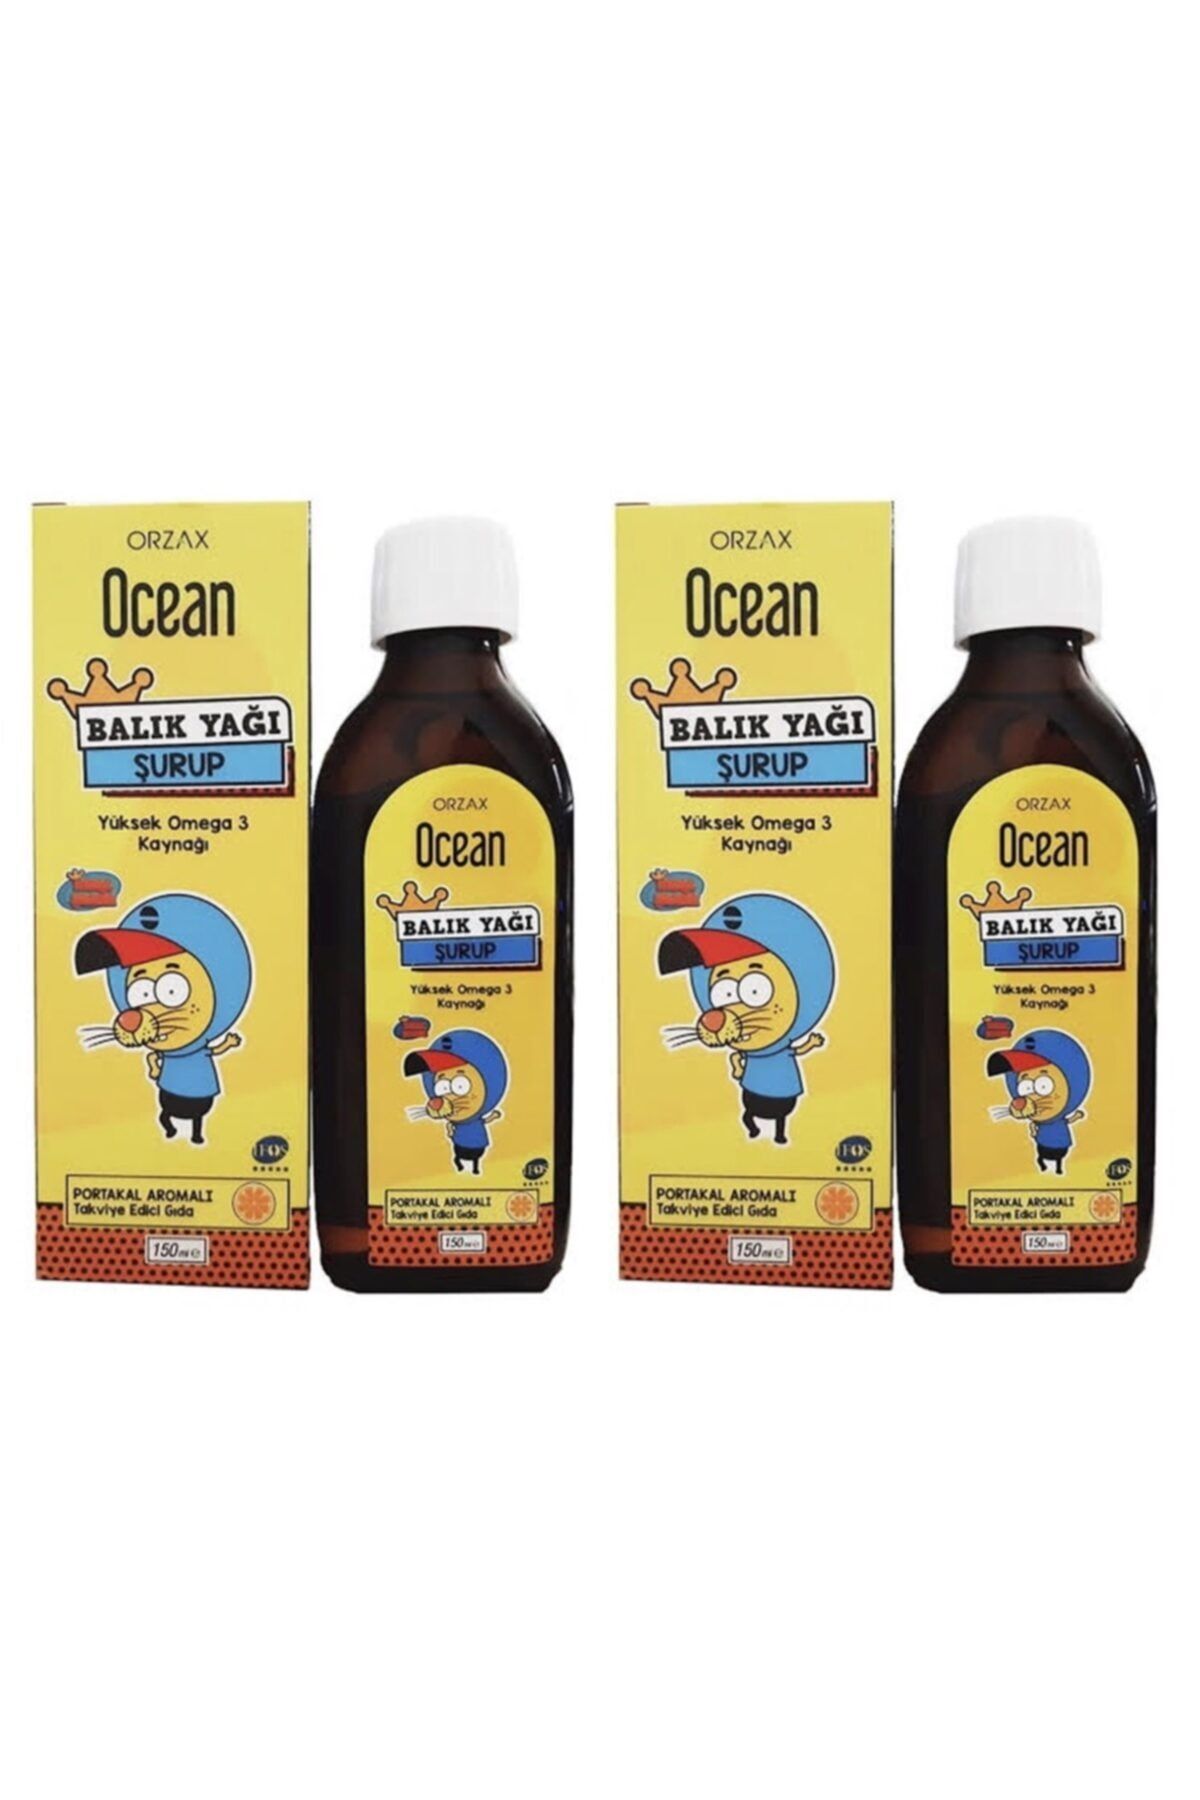 Ocean Balık Yağı Portakal Aromalı Omega 3 Kral Şakir 150 ml 2 Adet